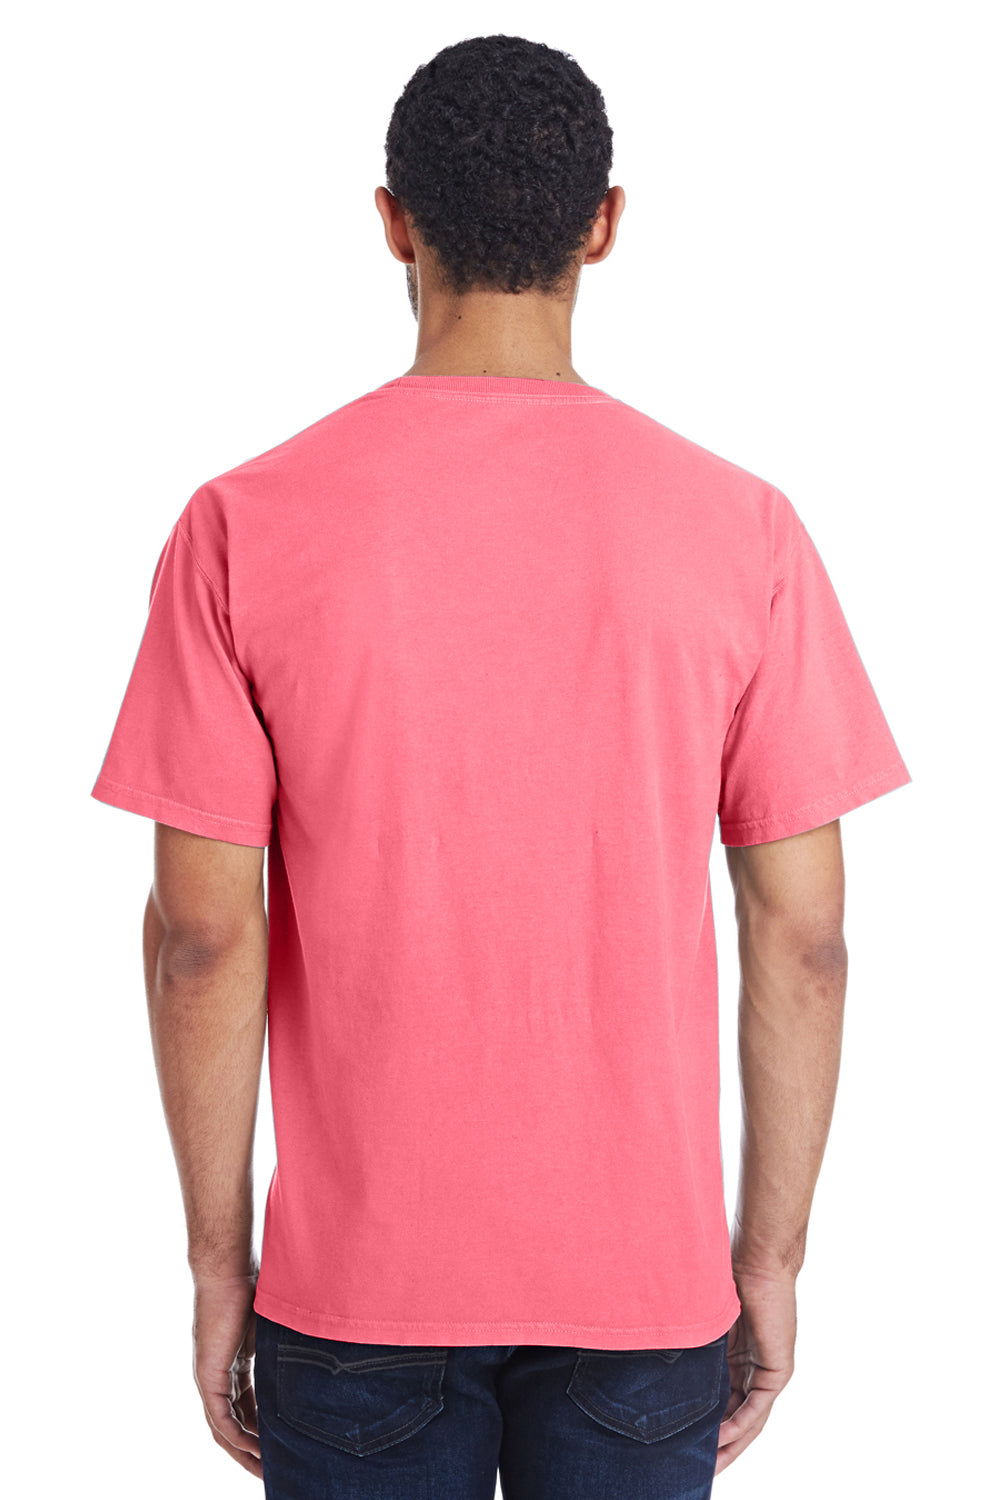 ComfortWash By Hanes GDH100 Mens Short Sleeve Crewneck T-Shirt Coral Pink Back